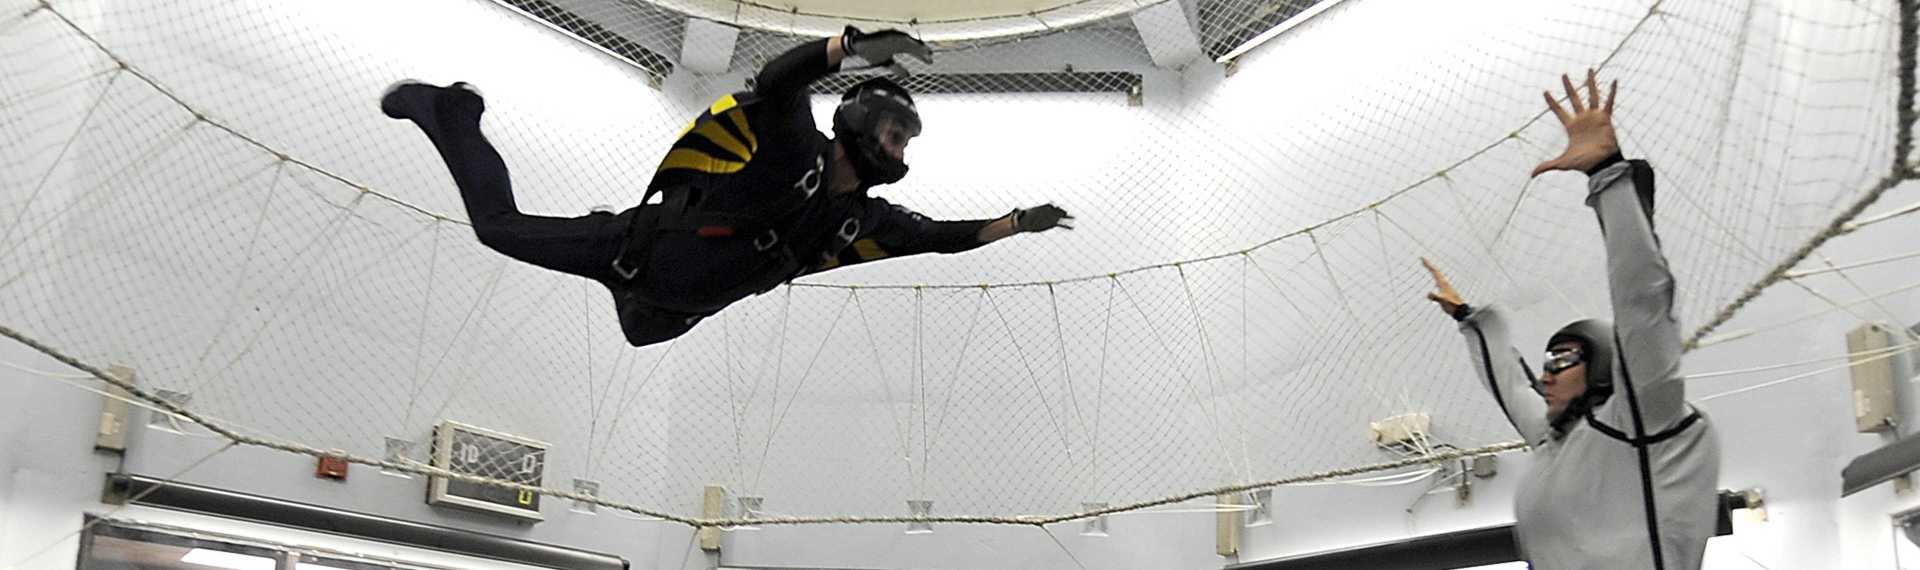 Indoor Skydiving für Junggesellenabschied